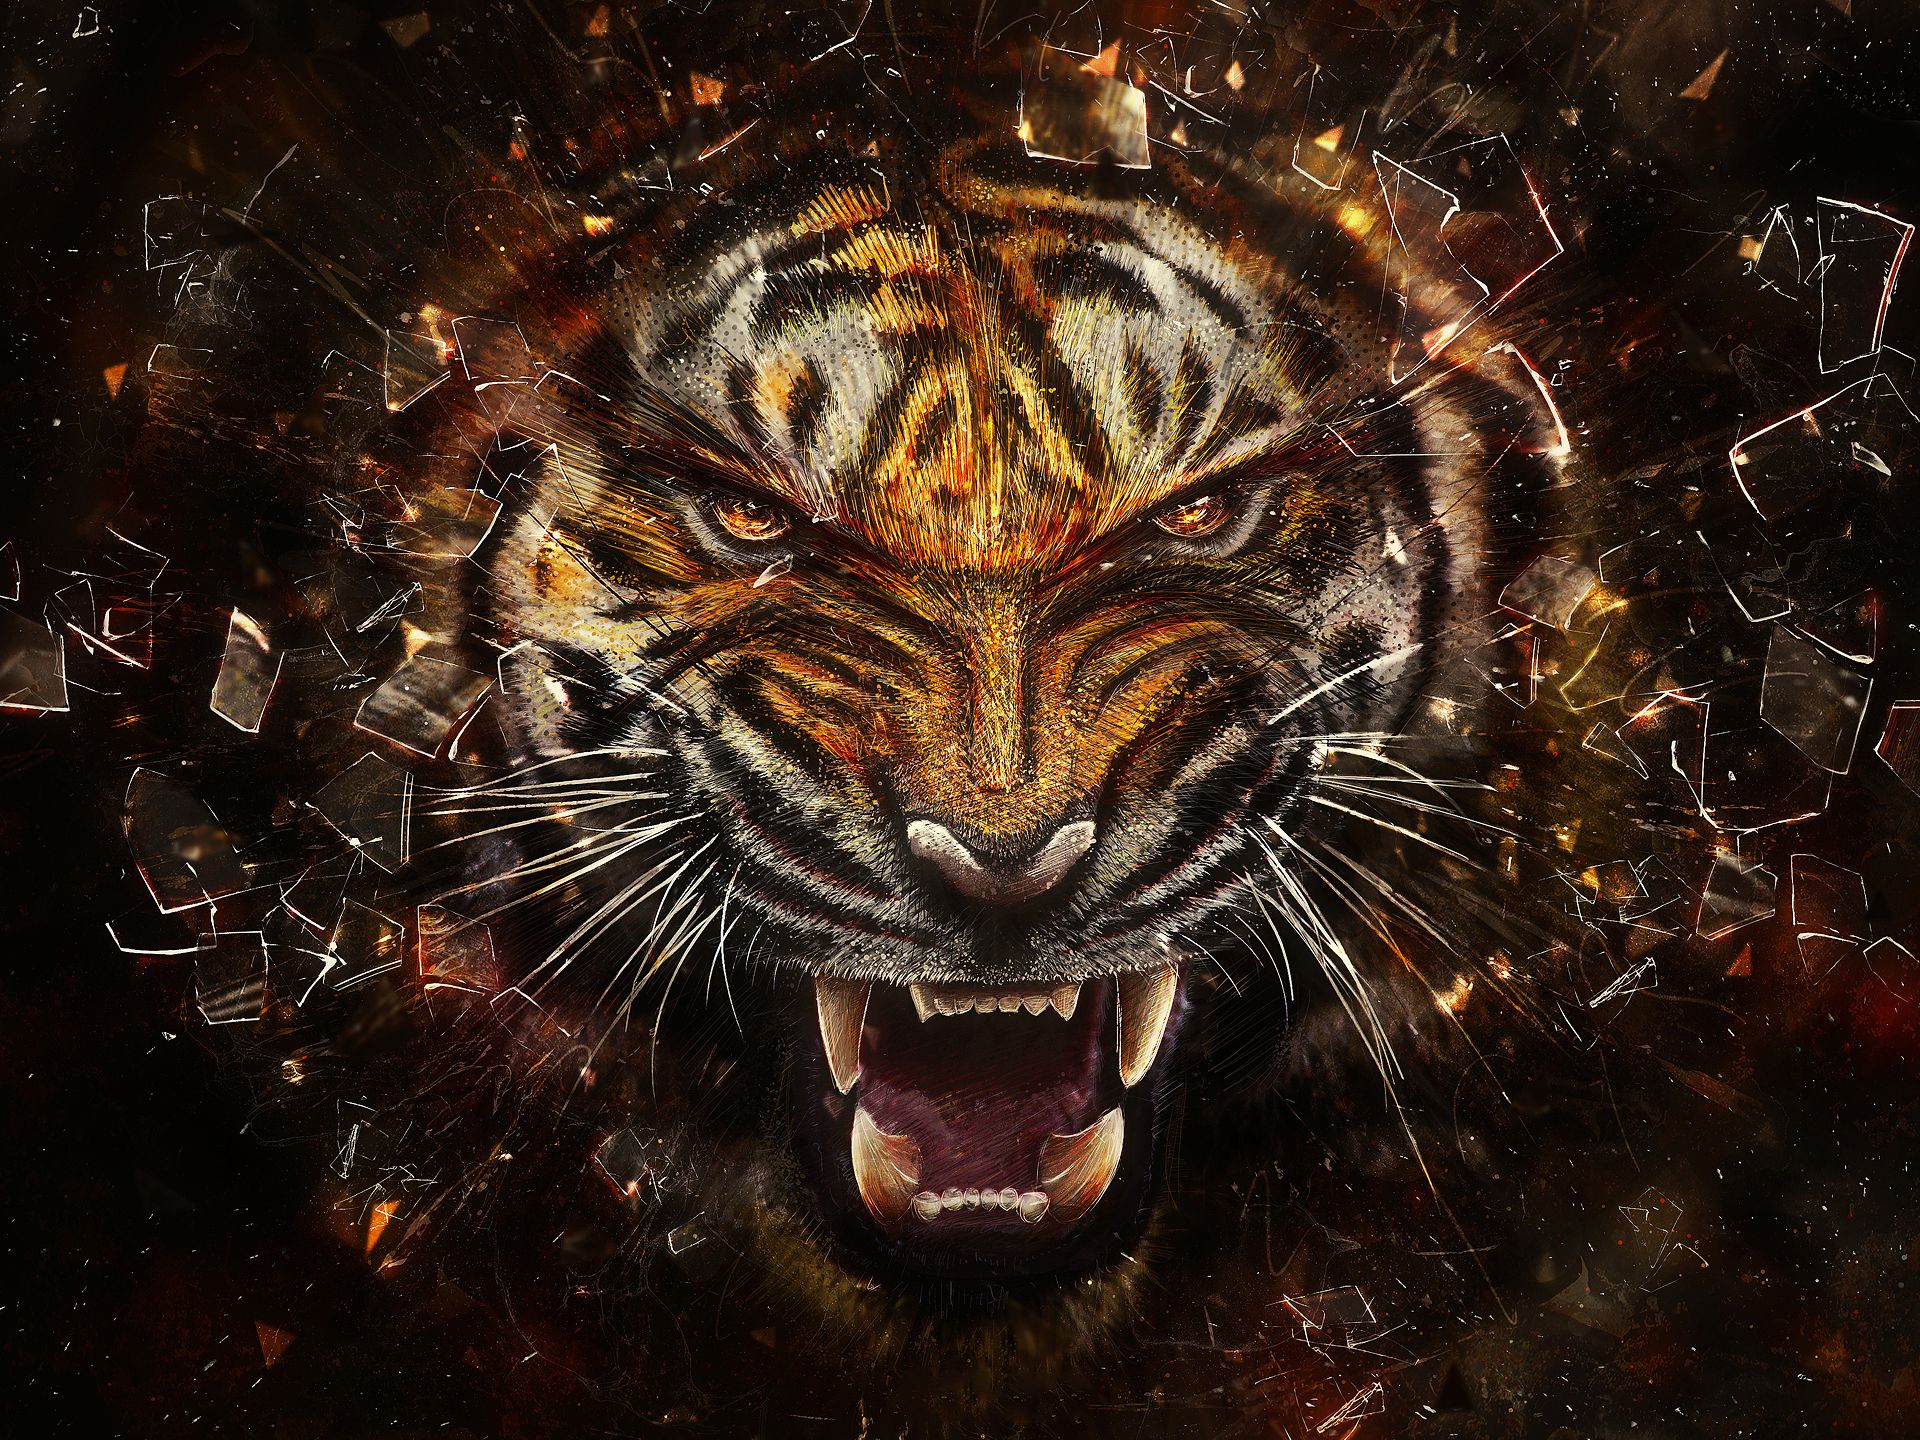 Black Tiger Jump Art Wallpaper Download | MobCup